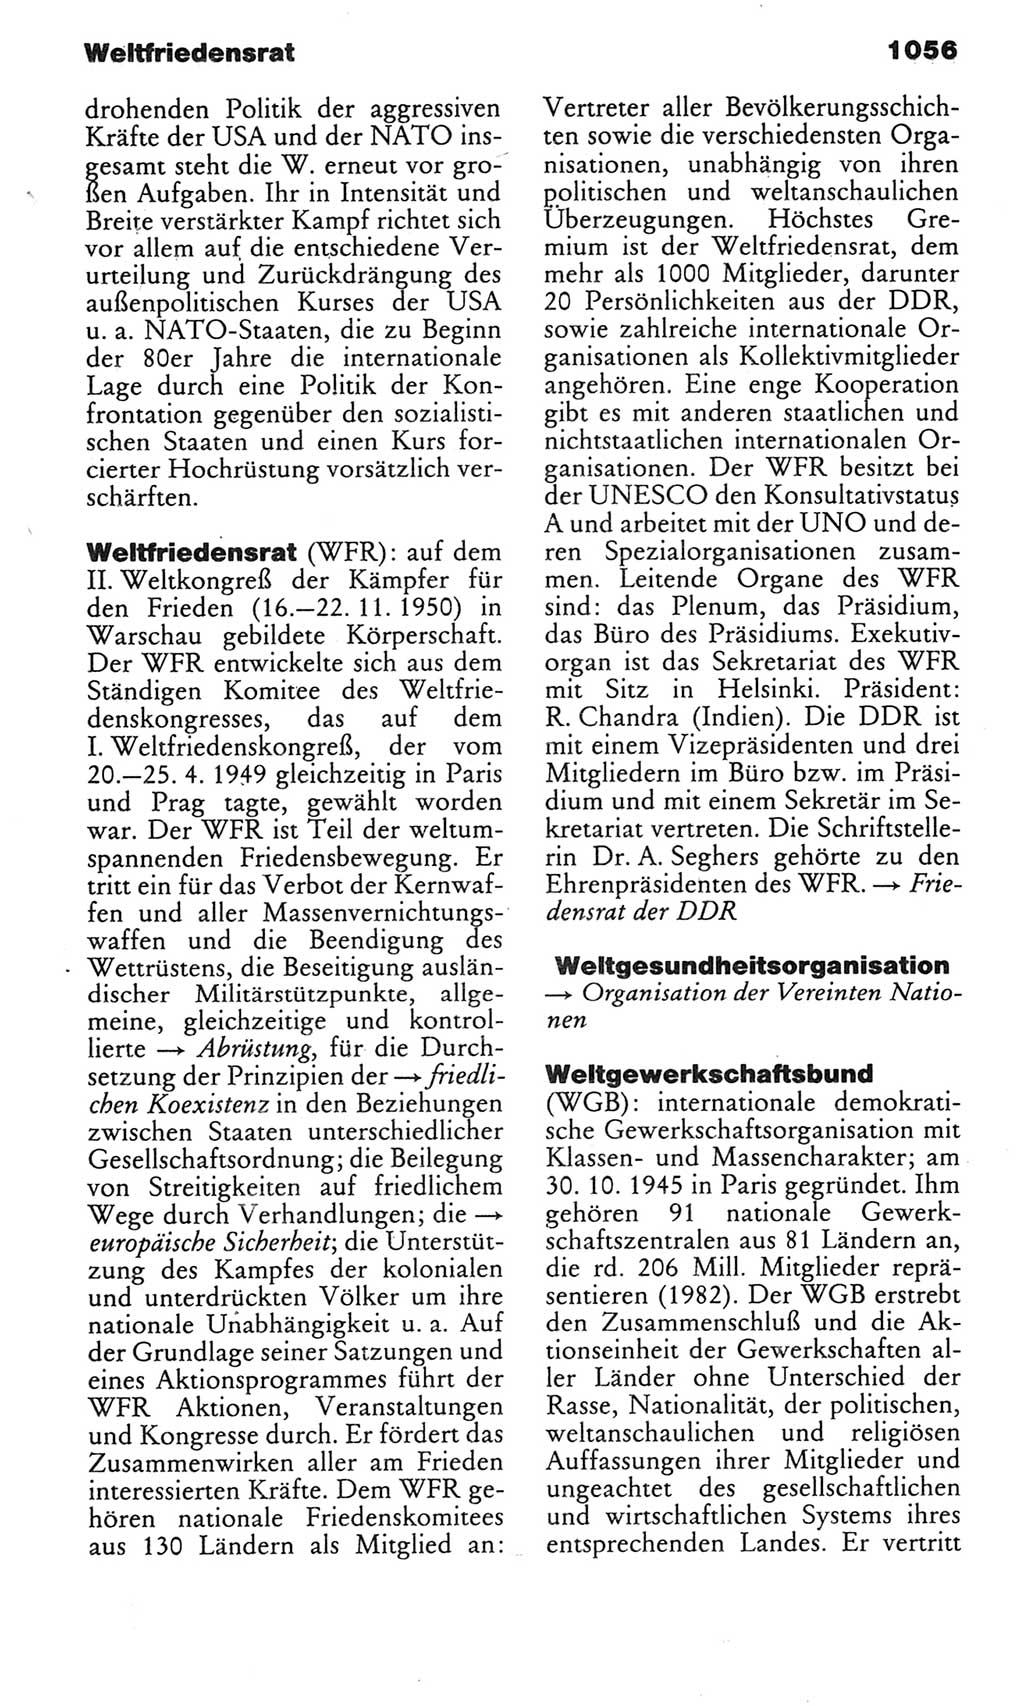 Kleines politisches Wörterbuch [Deutsche Demokratische Republik (DDR)] 1983, Seite 1056 (Kl. pol. Wb. DDR 1983, S. 1056)